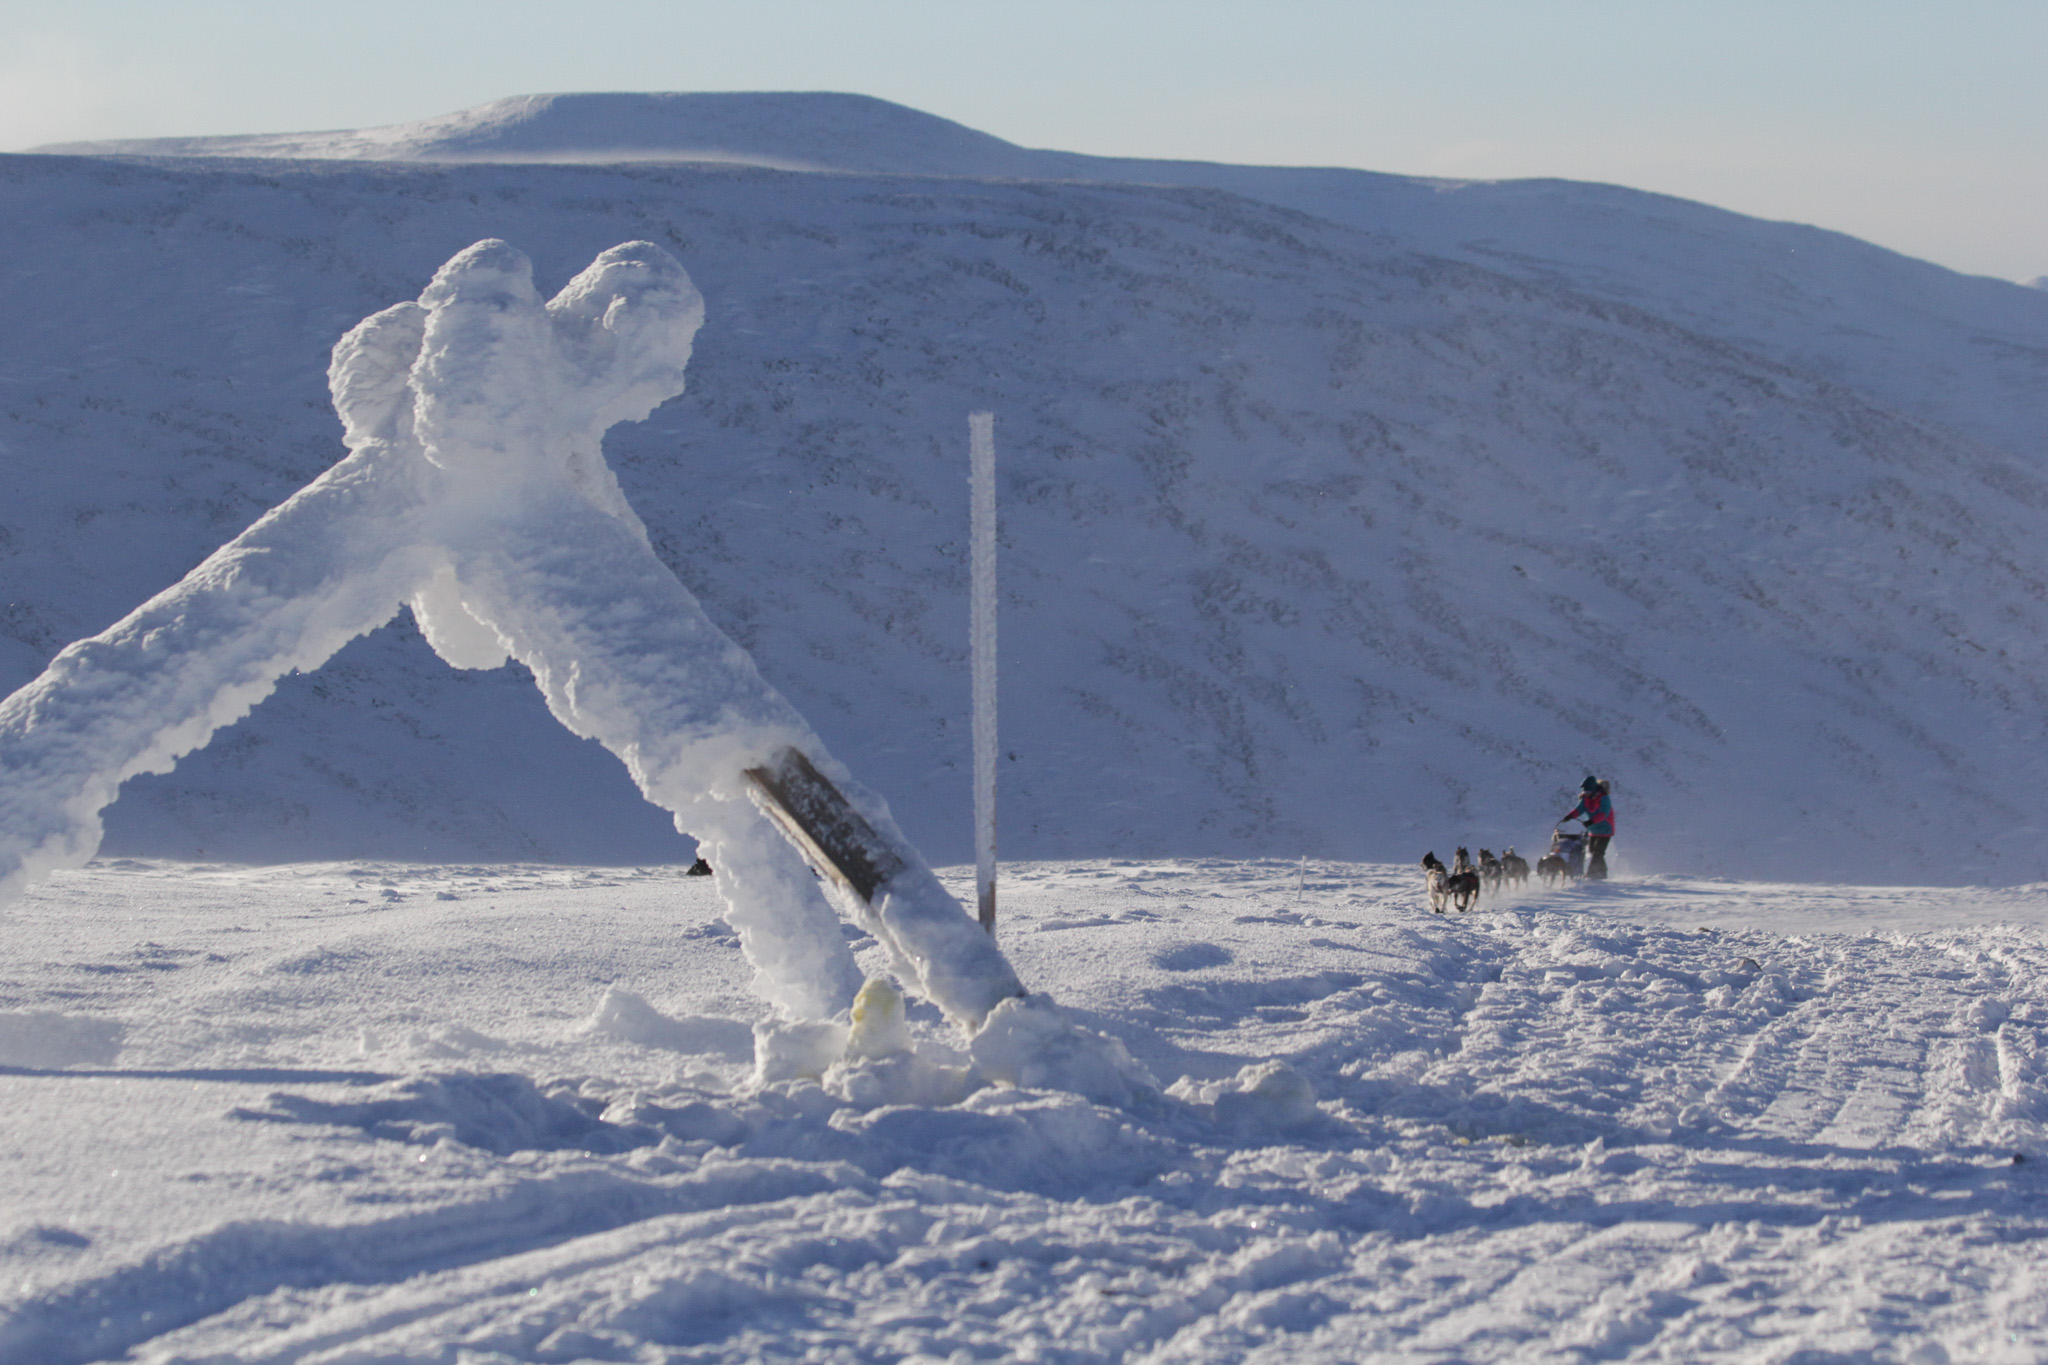 A dog team climbs a snowy hill